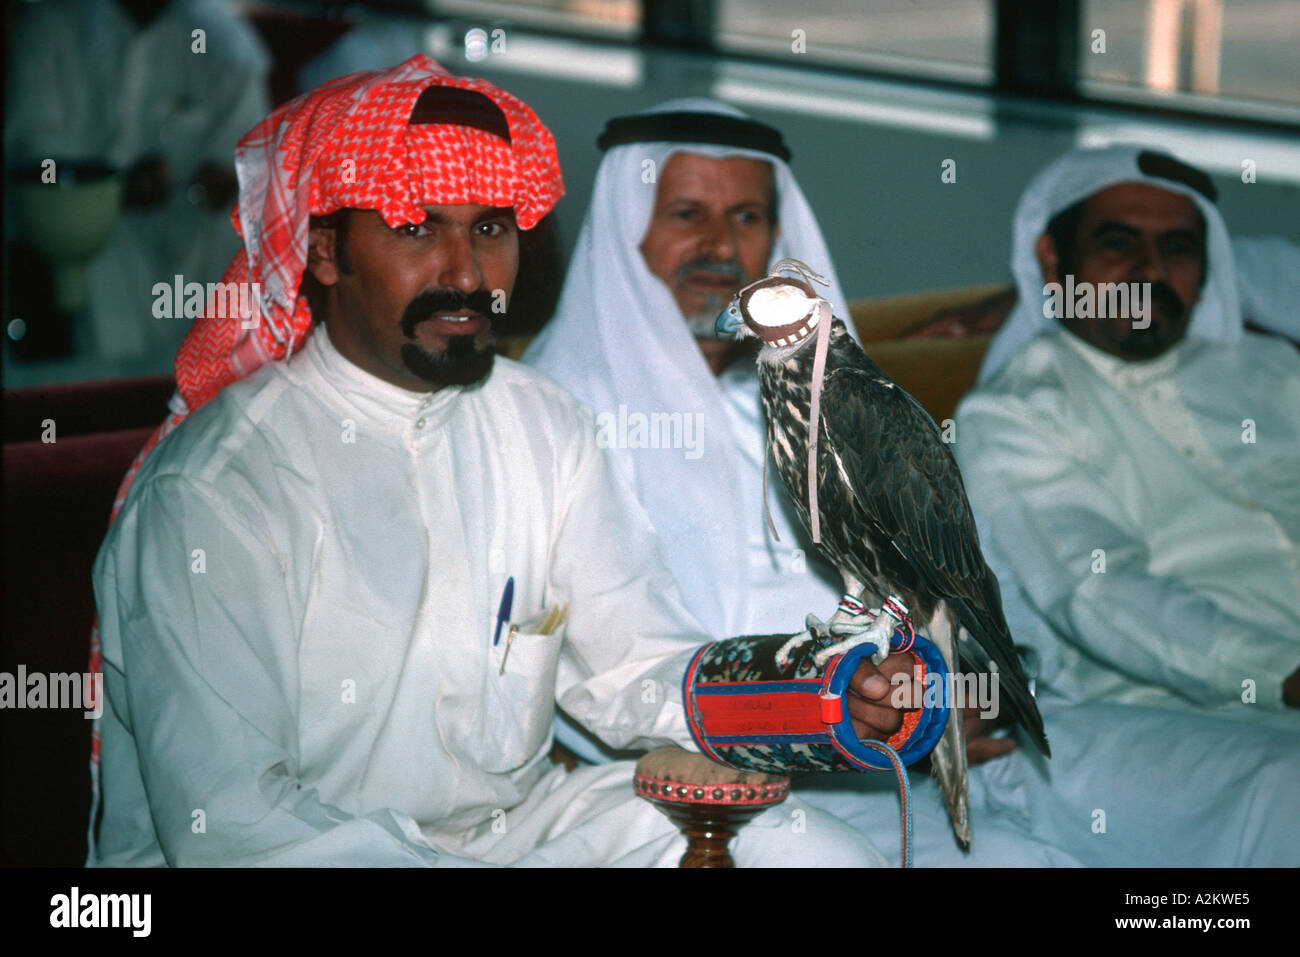 Falconer arabe avec l'aéroport de Bahreïn falcon à capuchon Moyen-orient Banque D'Images